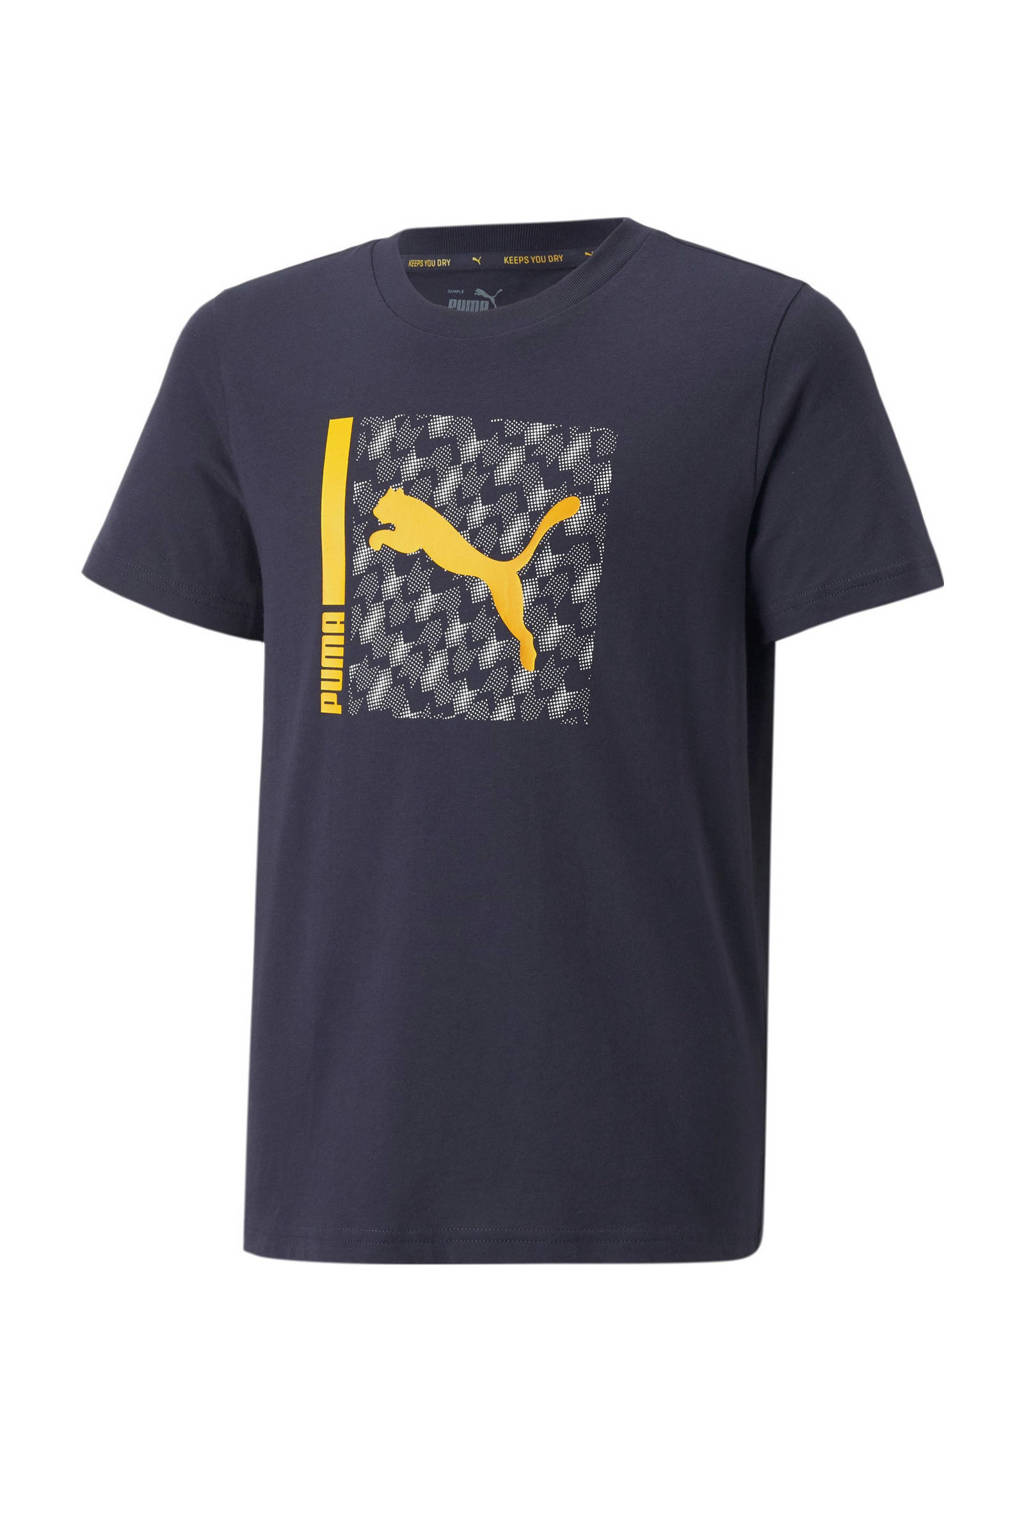 Puma   sport T-shirt donkerblauw/geel